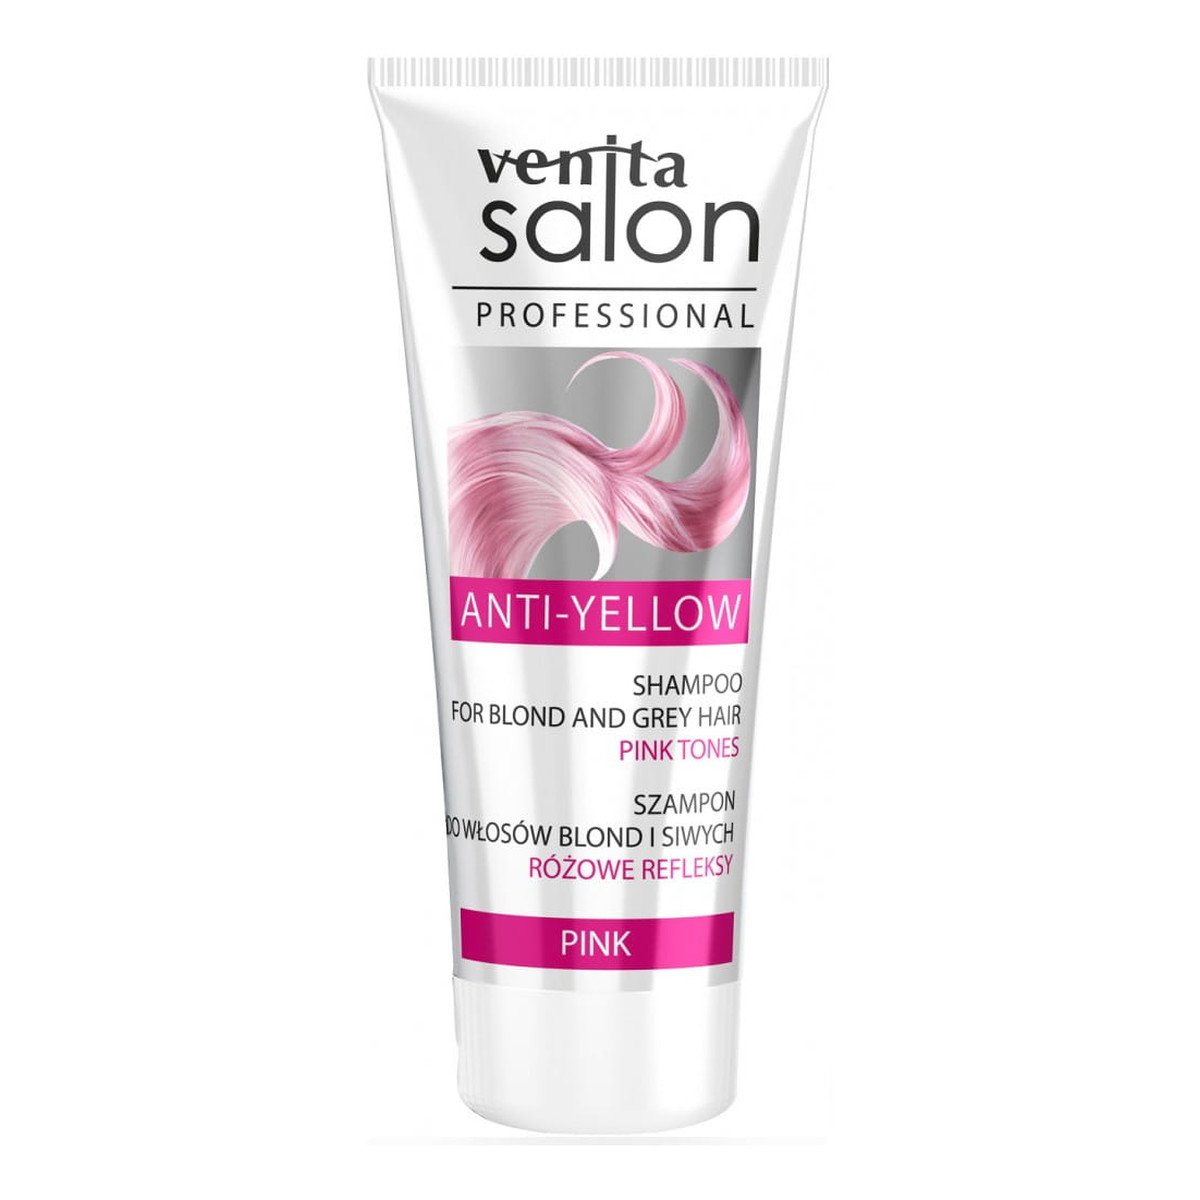 Venita Salon Professional Szampon rewitalizujący do włosów blond i siwych Pink 200ml